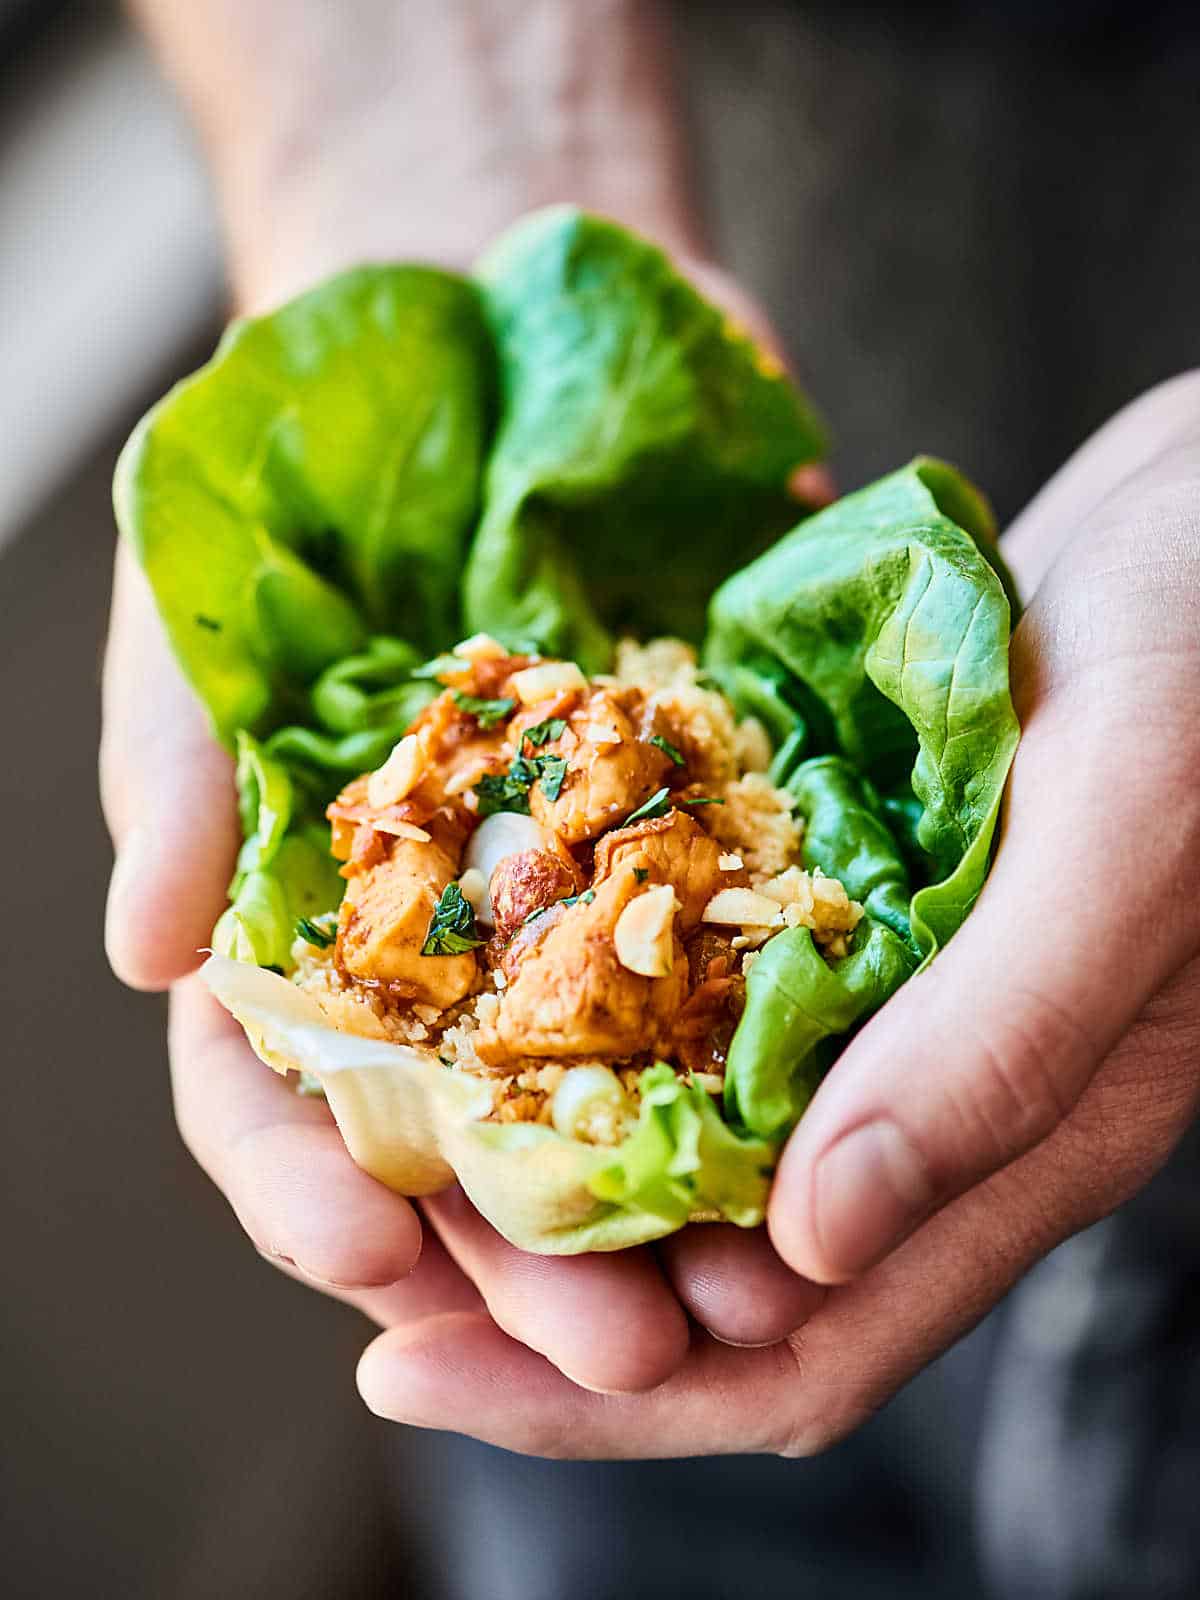 Healthy Asian Lettuce Wraps Recipe - w/ Chicken